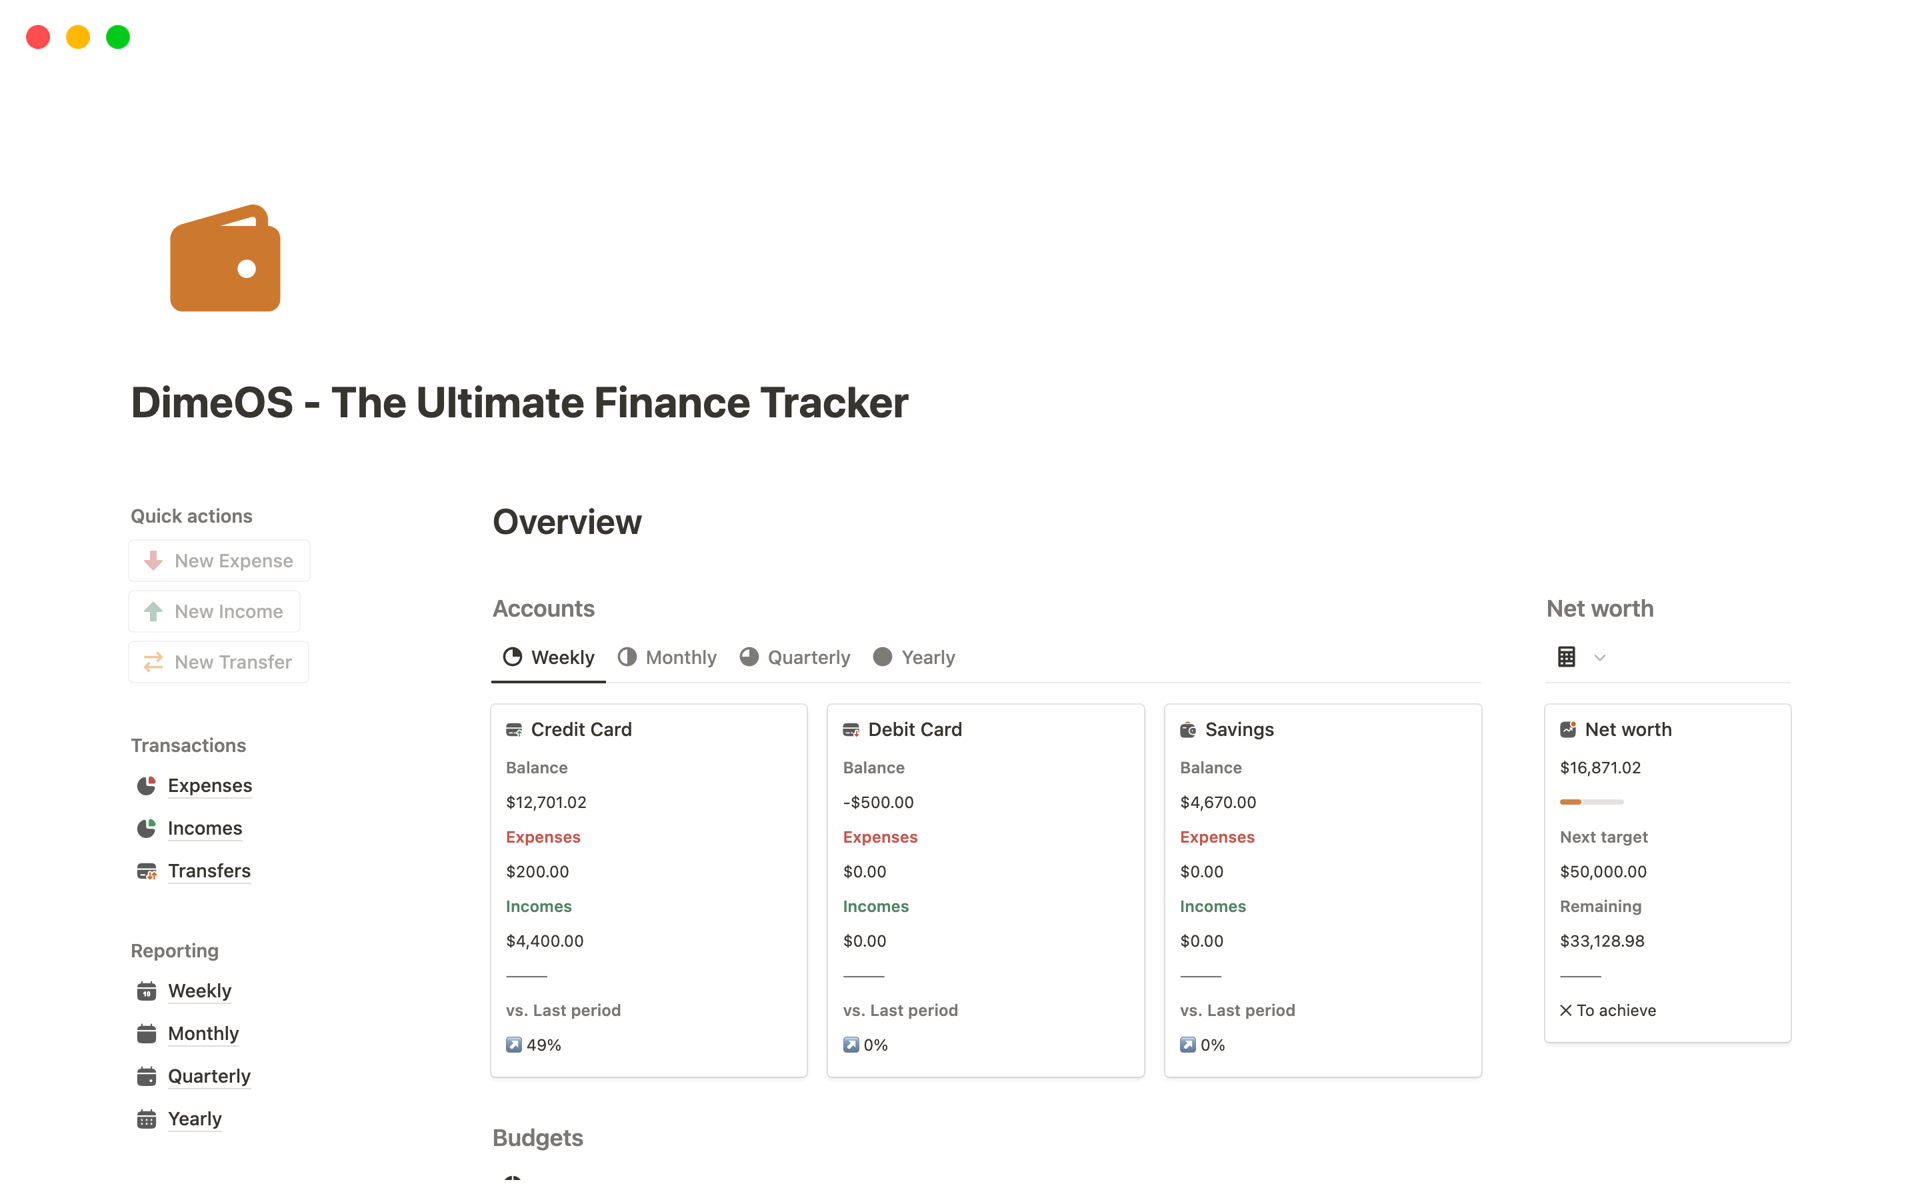 Uma prévia do modelo para DimeOS - The Ultimate Finance Tracker